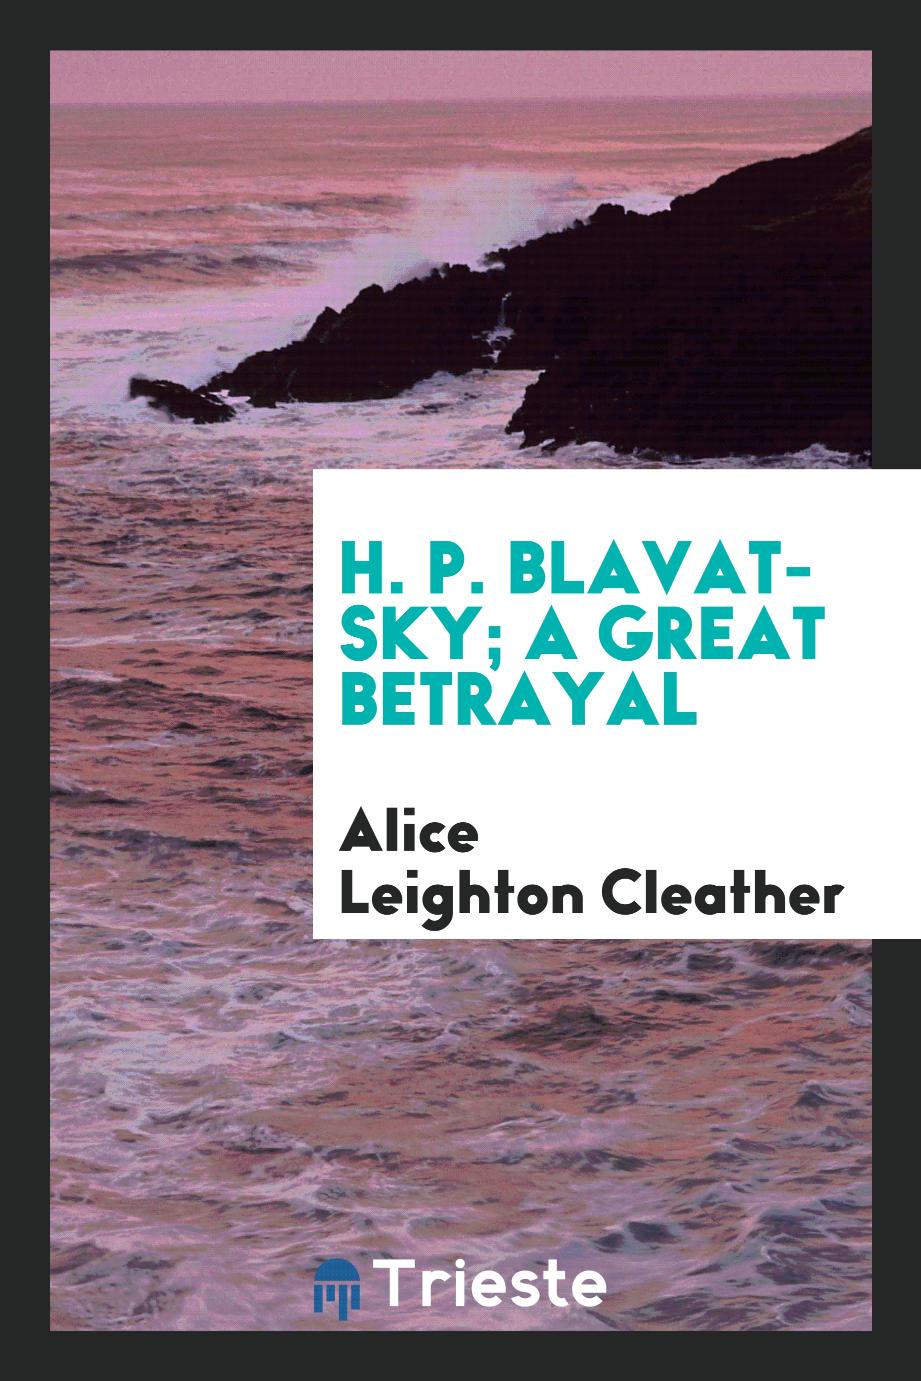 H. P. Blavatsky; a great betrayal